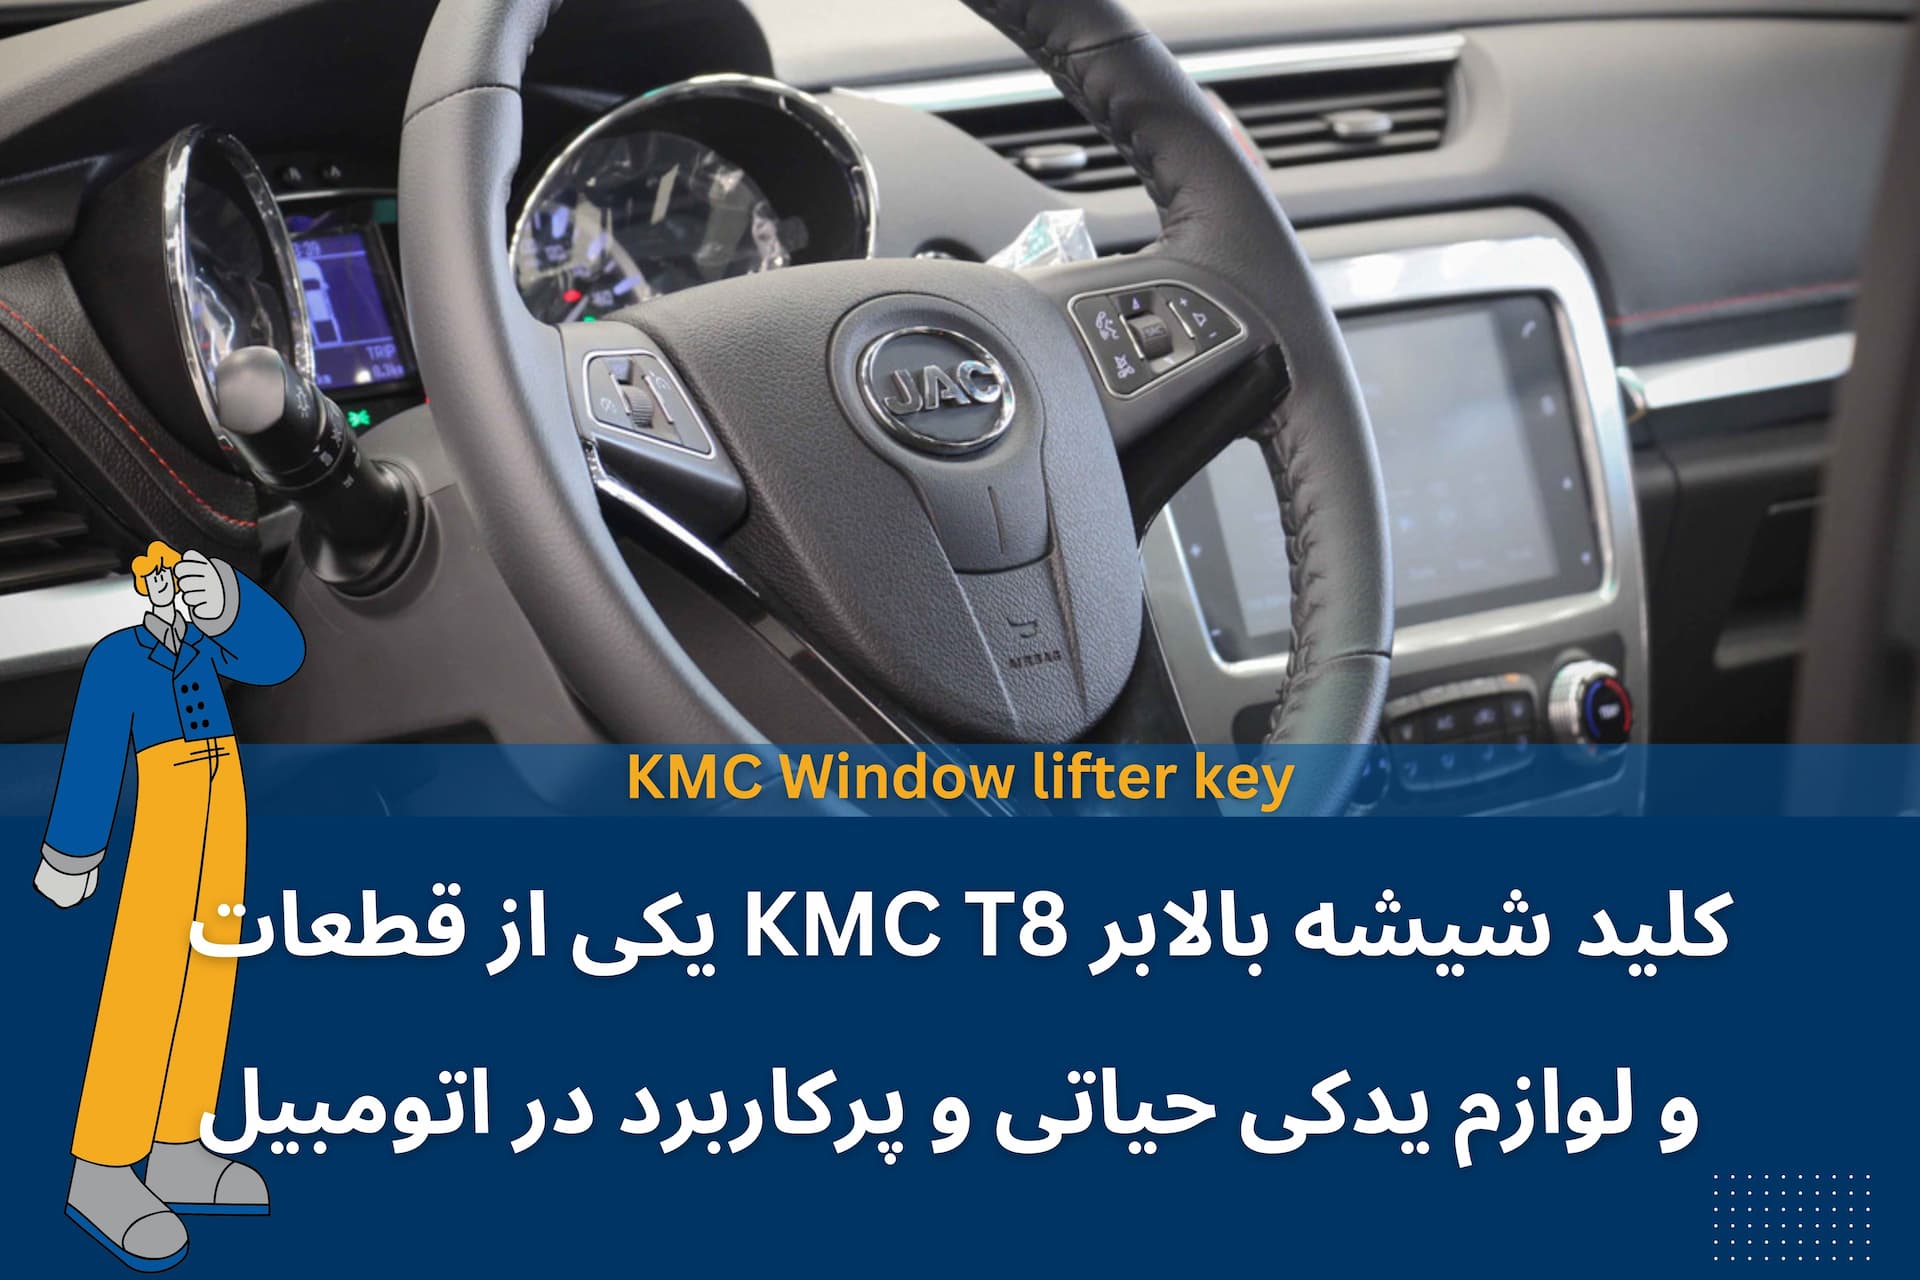 کلید شیشه بالابر KMC T8 یکی از قطعات و لوازم یدکی حیاتی و پرکاربرد در اتومبیل